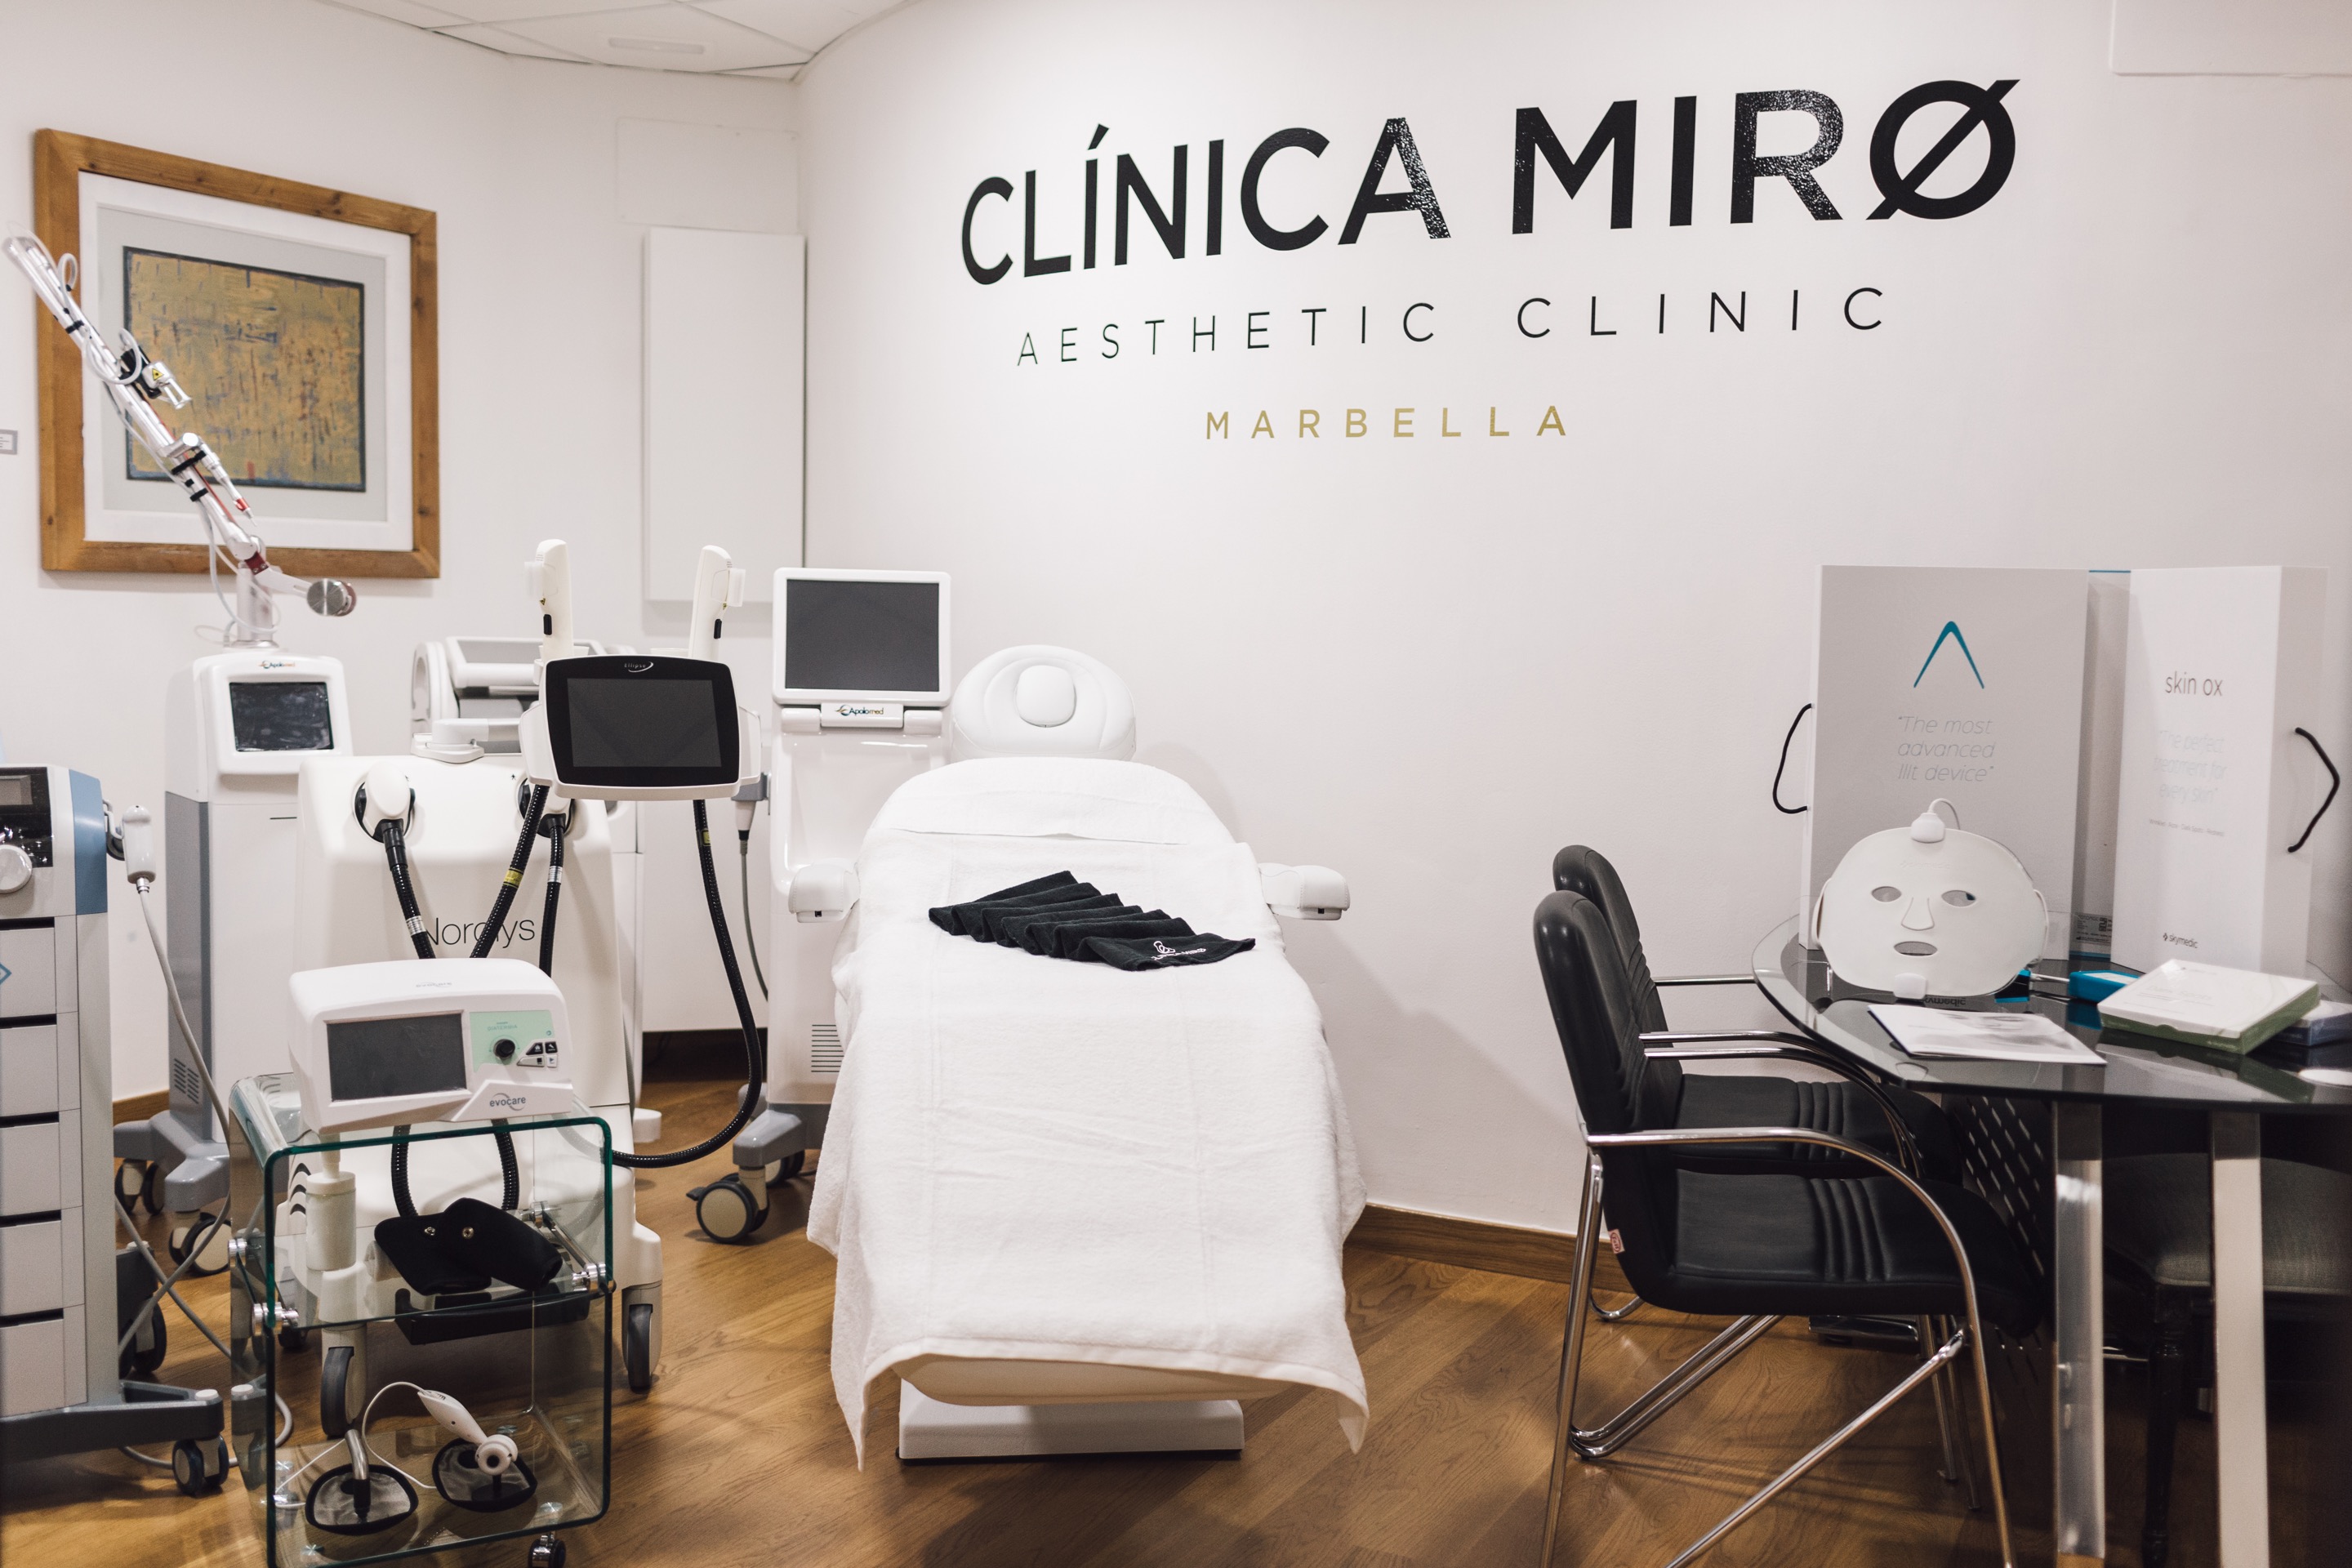 tratamiento estético y médico estético en Marbella – Clínica Miró